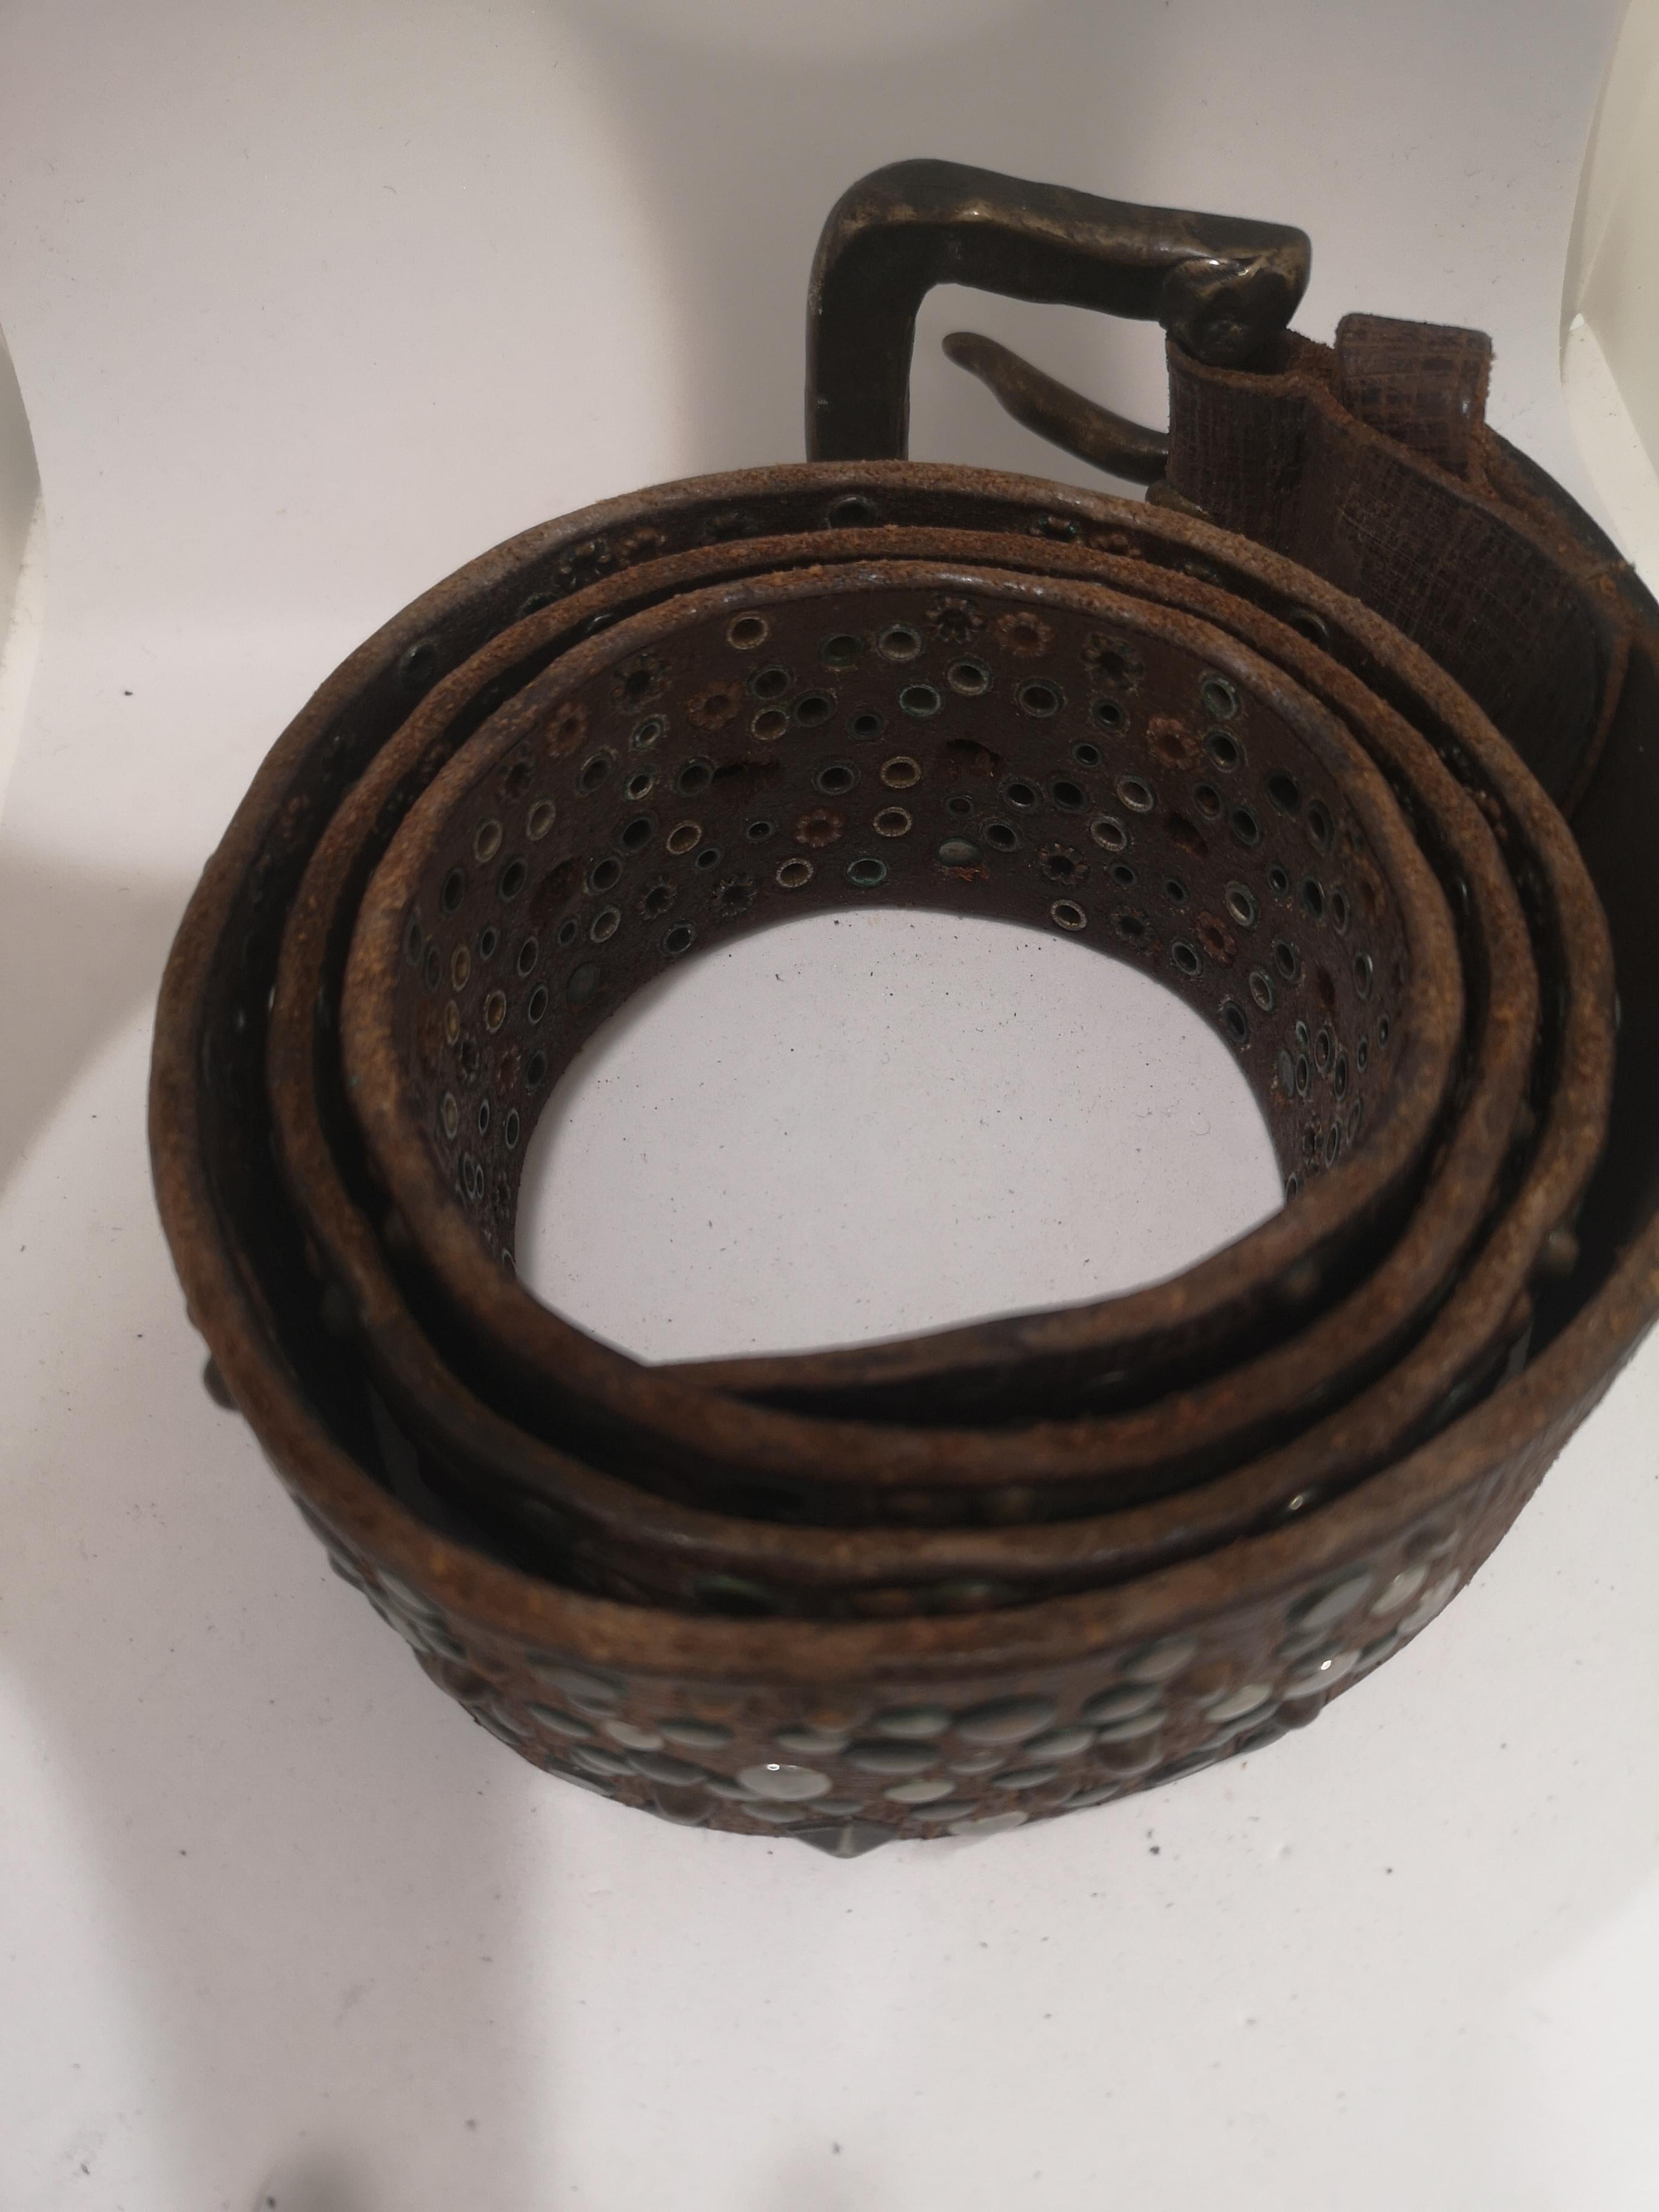 Vintage brown leather belt
total lenght 120 cm